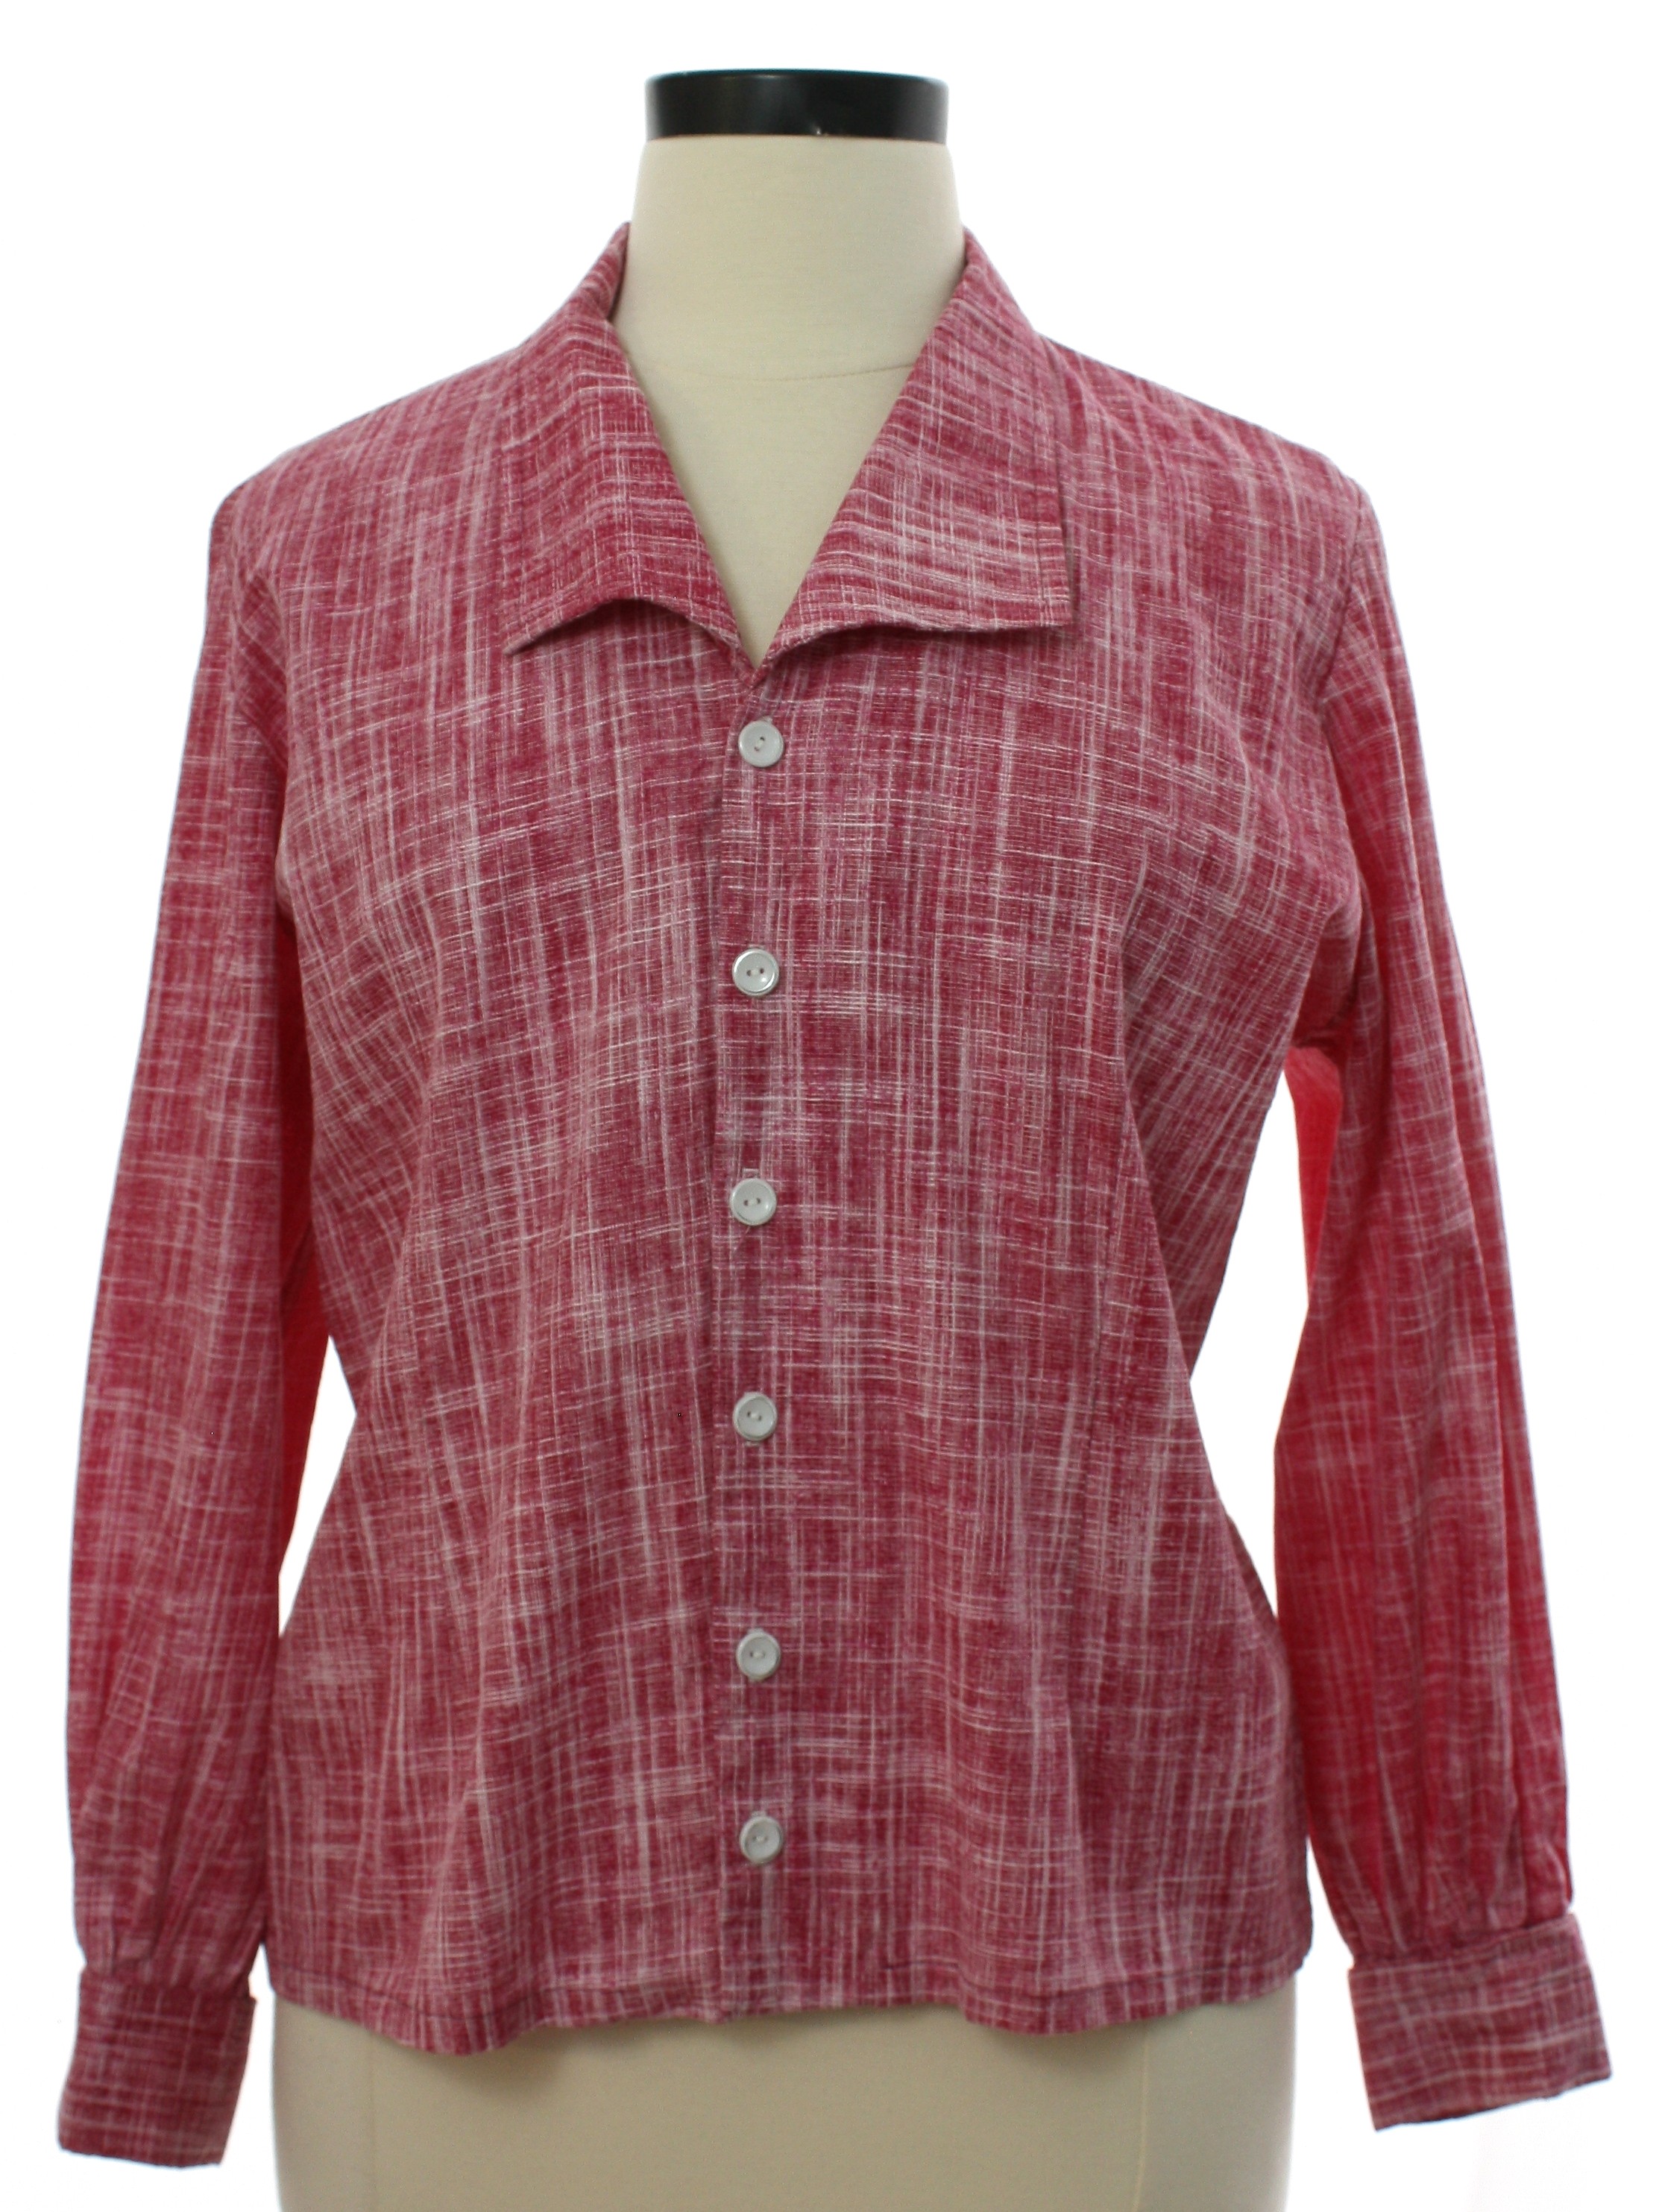 Retro 1970's Shirt (Home Sewn) : 70s -Home Sewn- Womens hazy berry red ...